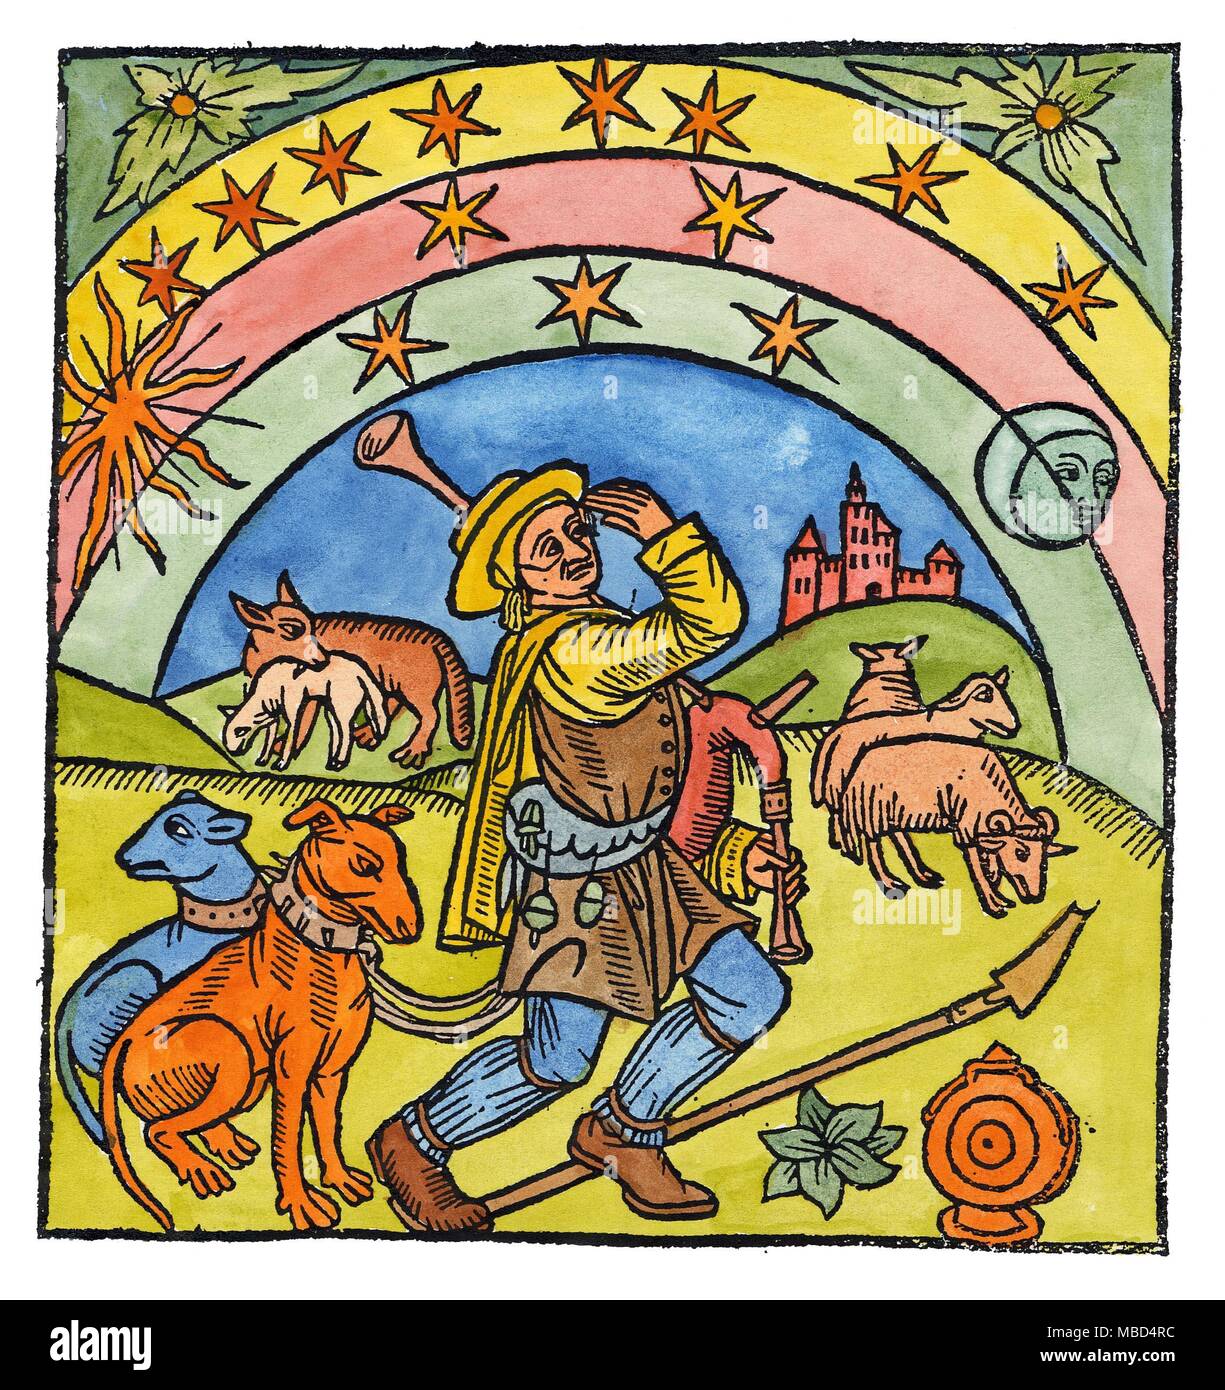 Sterne - Schäferhund - SONNE - MOND Schäfer mit seinen Hunden und Dudelsack, sein Vieh neigen, unter einem herrlichen, und ziemlich symbolische Himmel. Titlepage von Der Scaepherders Kalengier (Shepherd's Kalender), 1516. Stockfoto